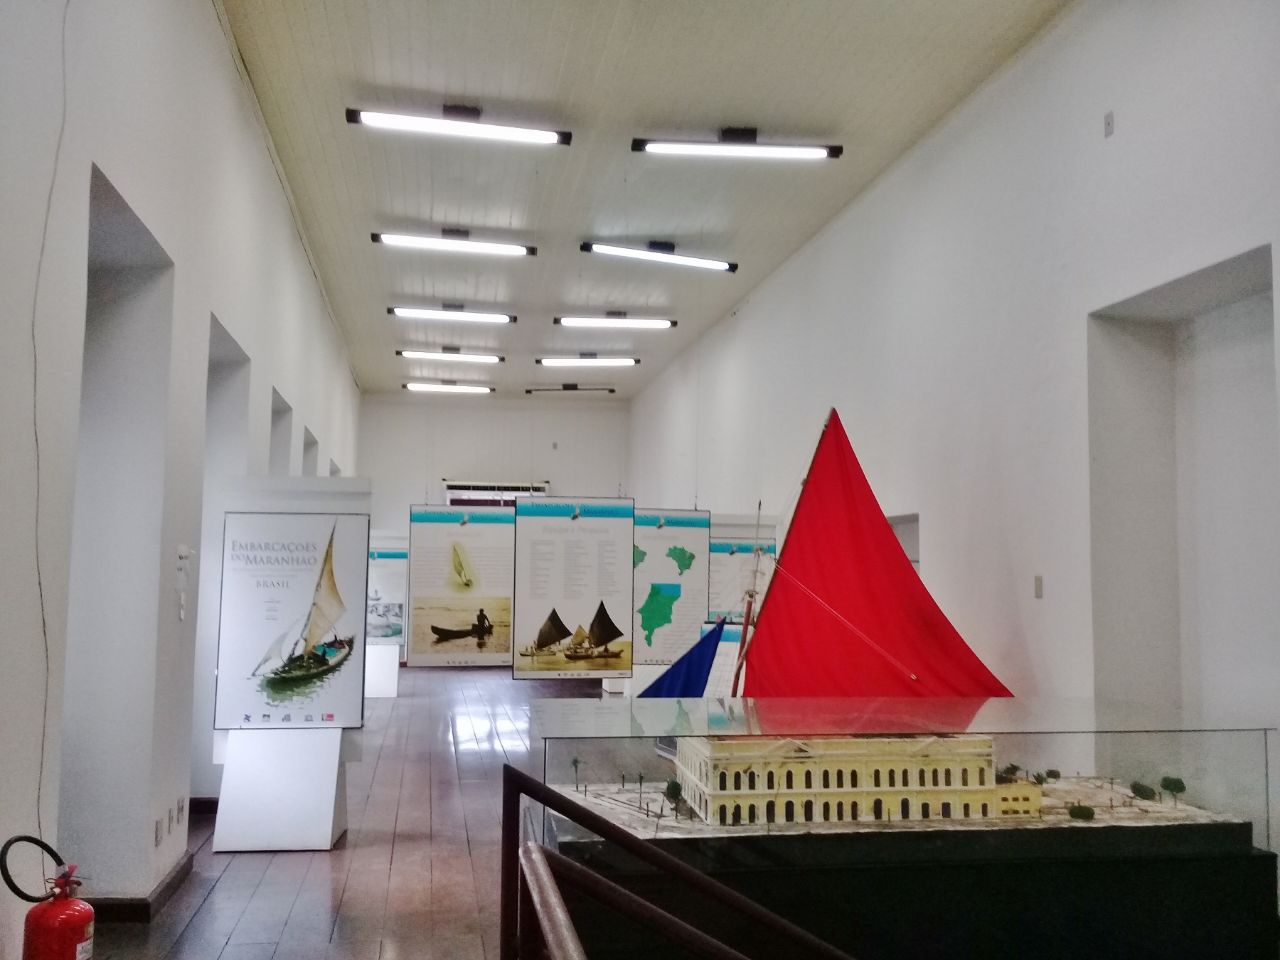 Музей Васконселос — Мемориал Исторического Центра Сан-Луис, Бразилия